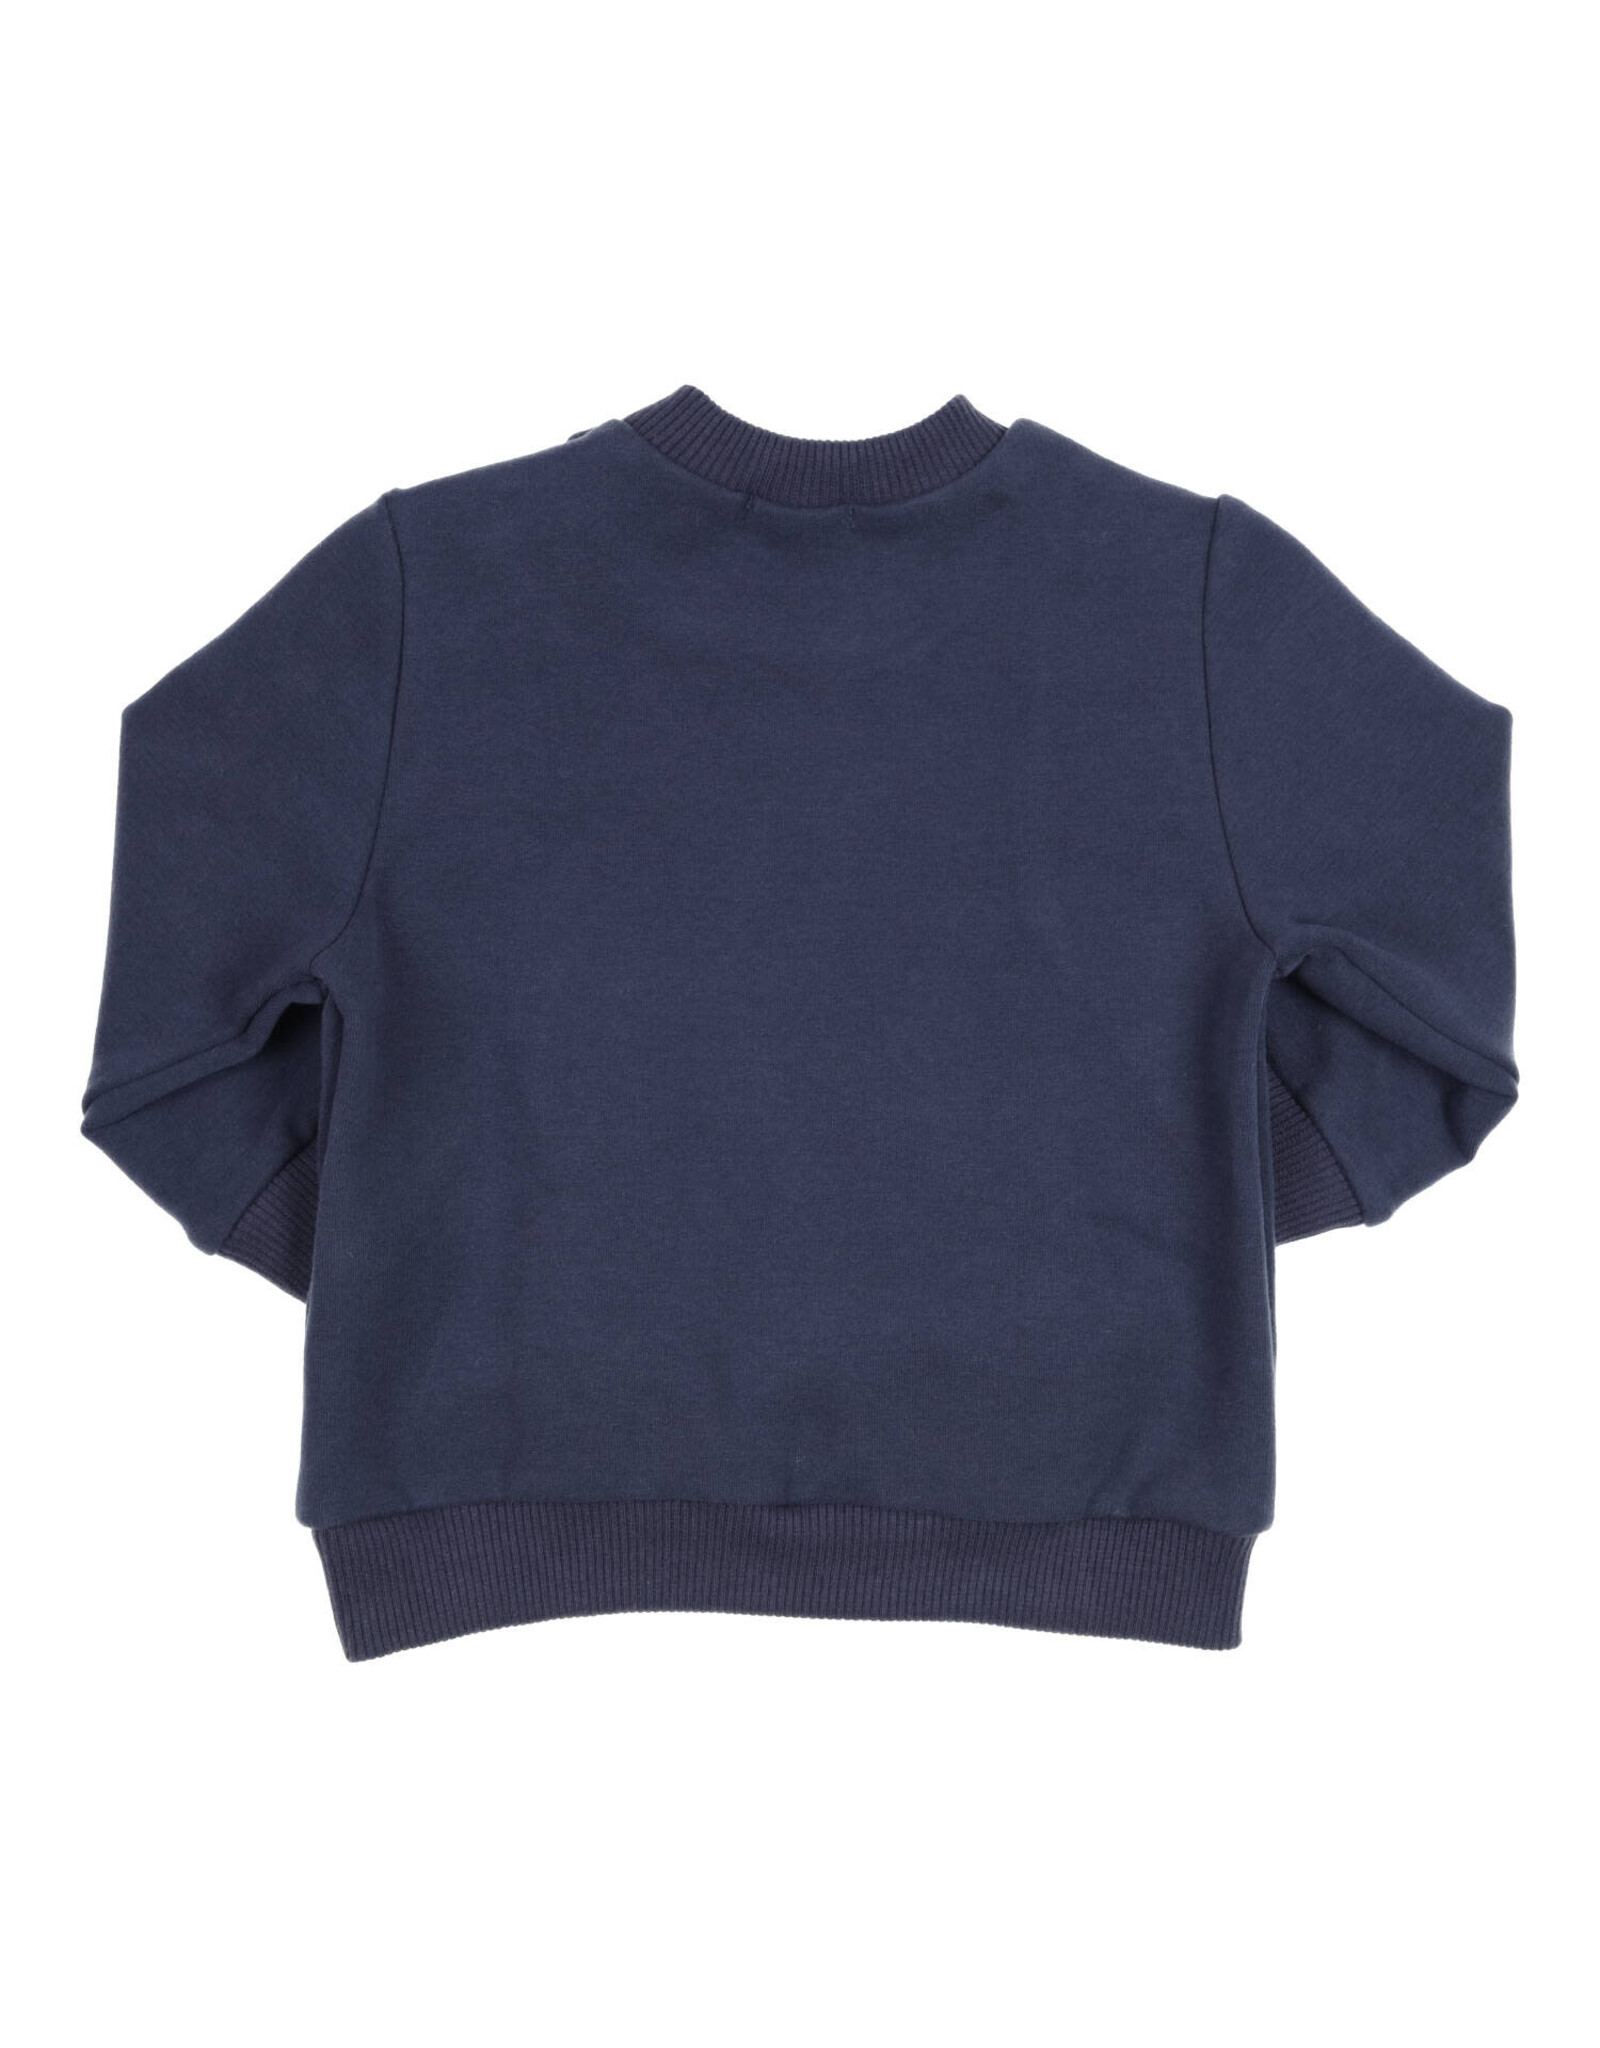 Gymp Sweater Carbondoux Navy W23